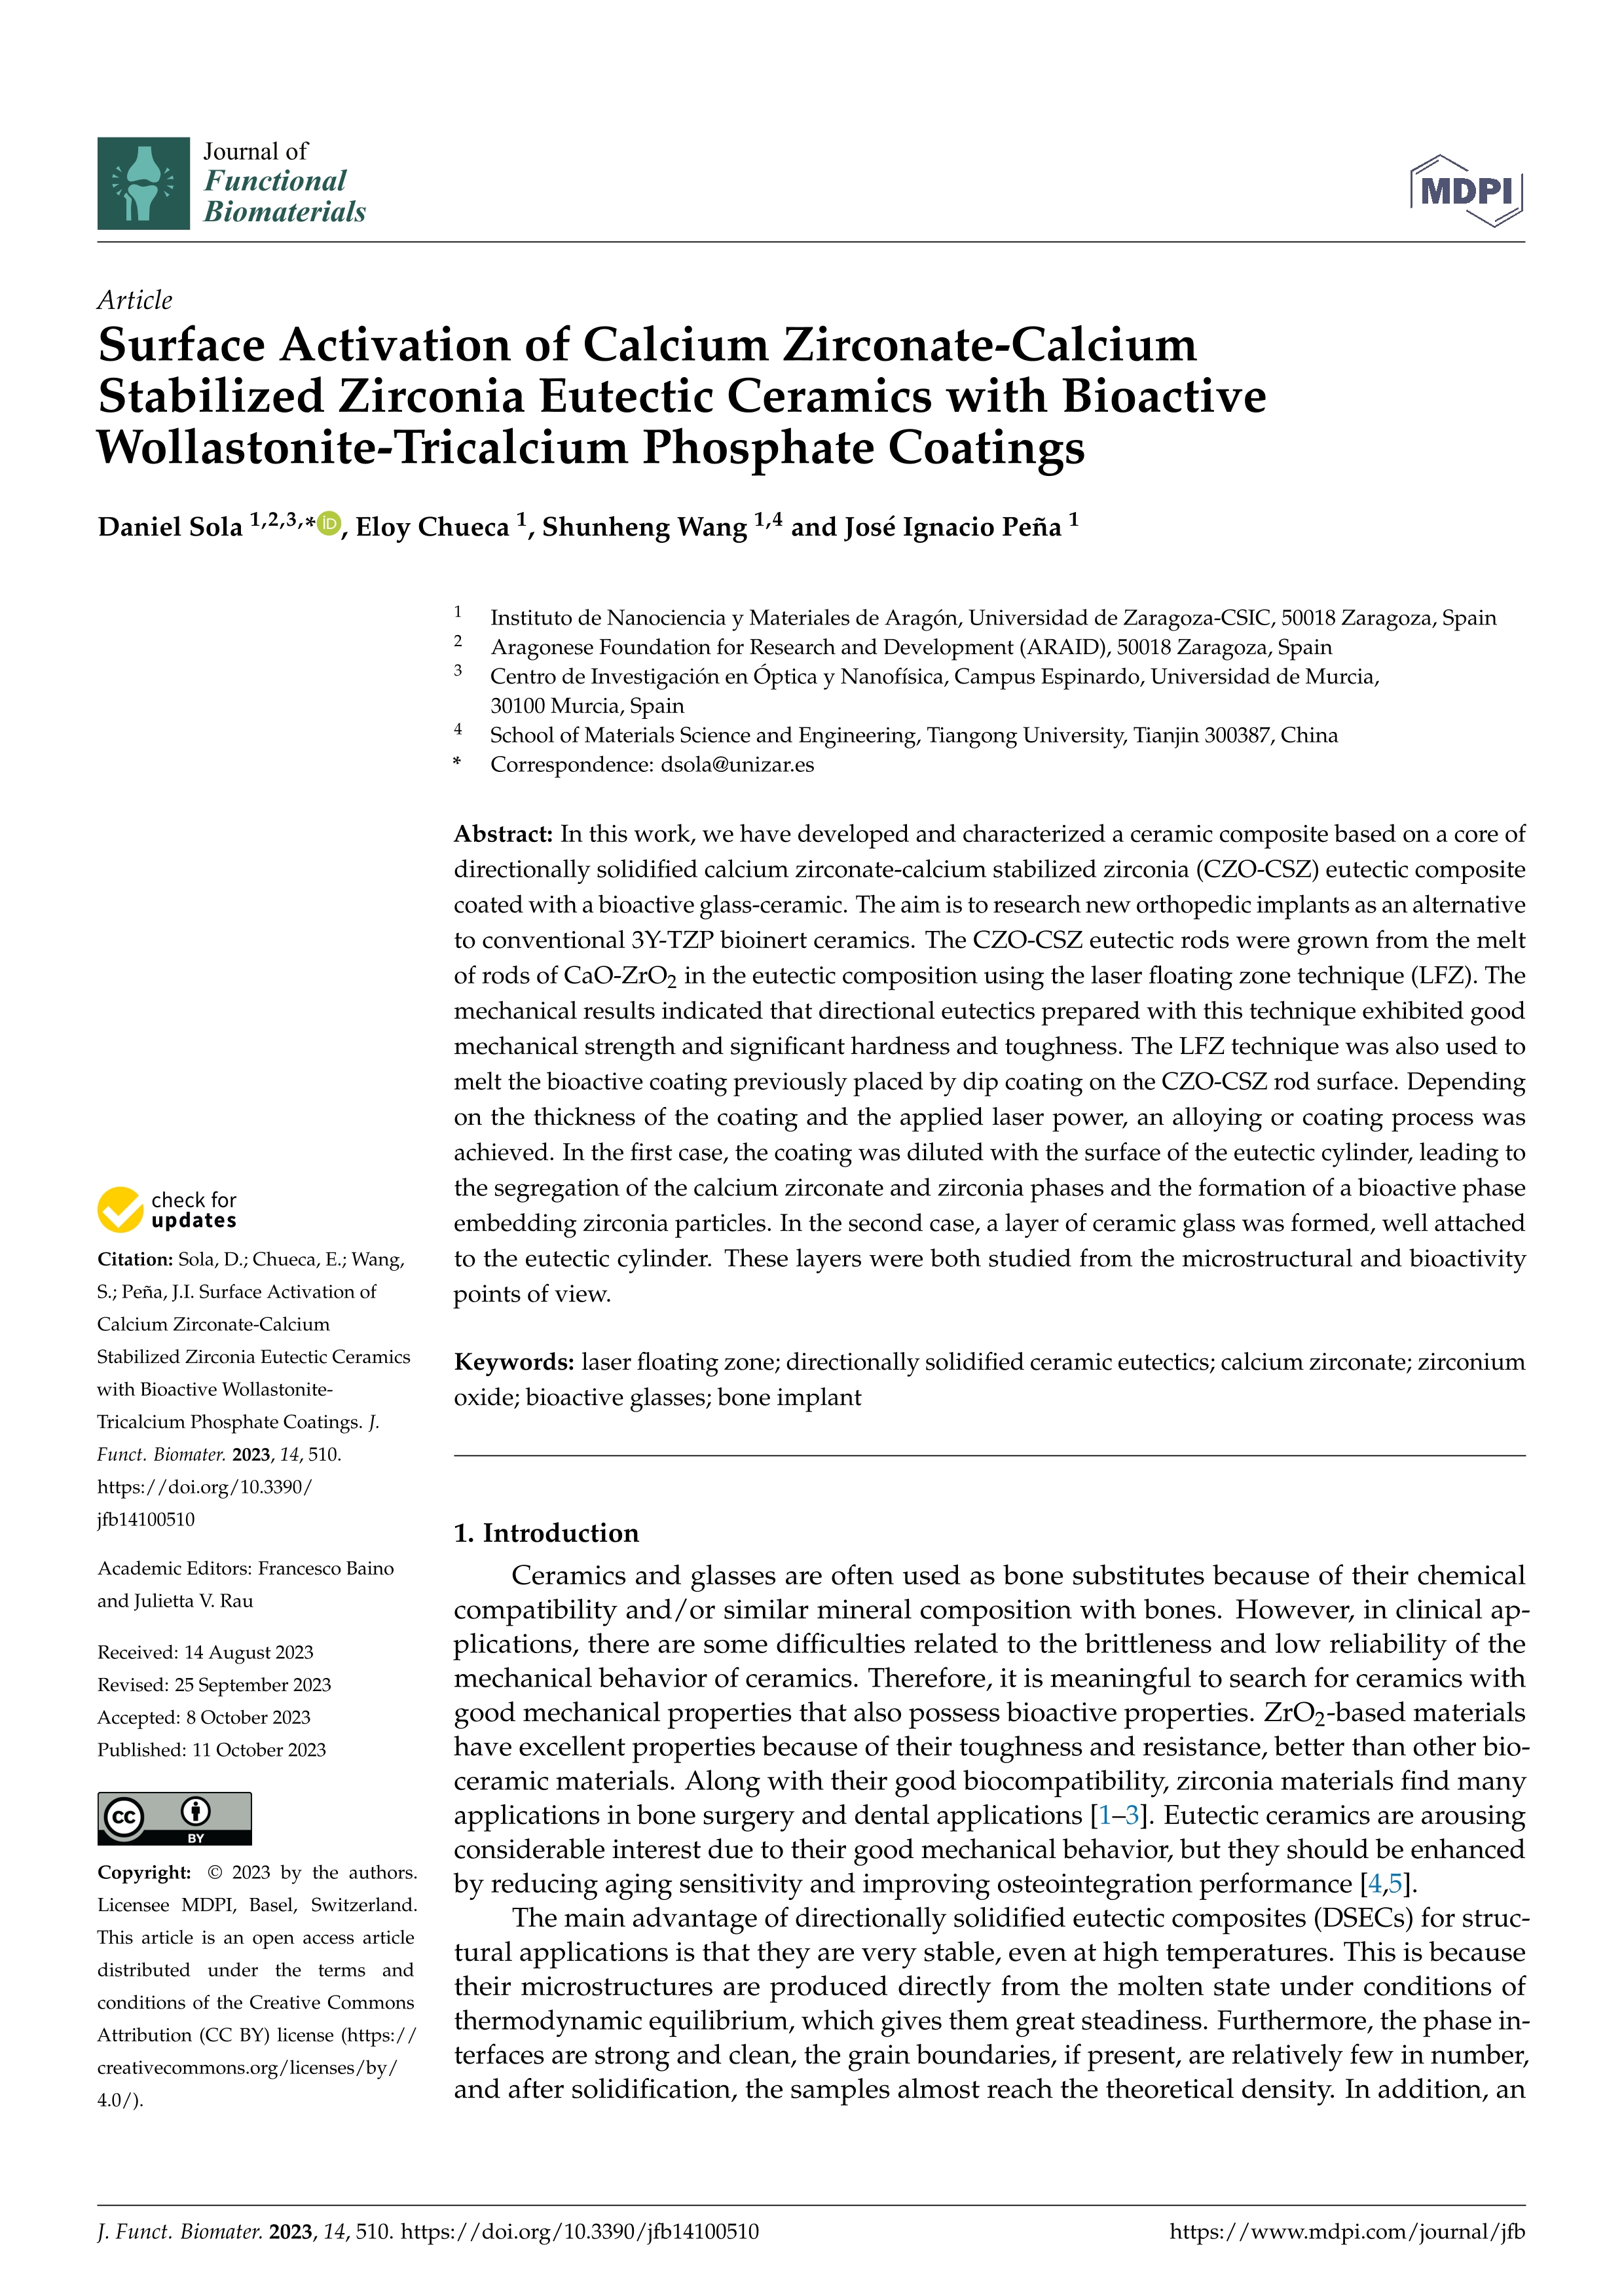 Surface activation of calcium zirconate-calcium stabilized zirconia eutectic ceramics with bioactive wollastonite-tricalcium phosphate coatings